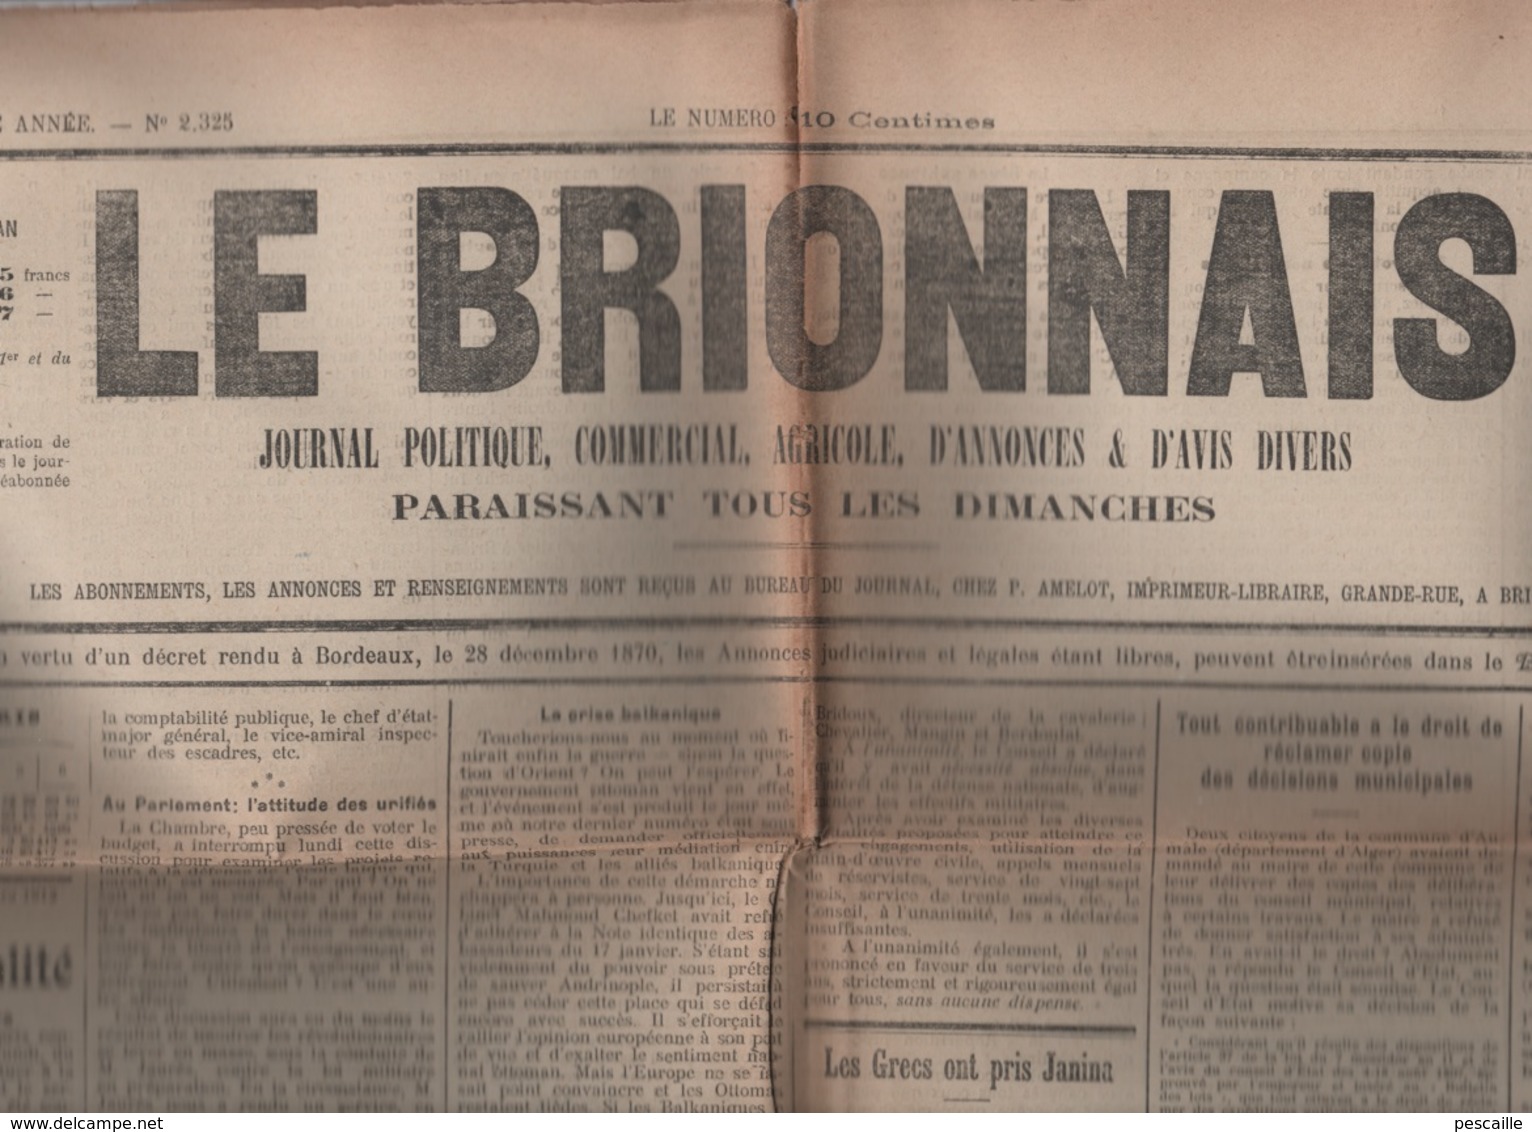 27 EURE - LE BRIONNAIS 09 03 1913 BRIONNE - SERVICE MILITAIRE - GRECE TURQUIE JANINA - BALKANS - SAPEURS POMPIERS - - General Issues